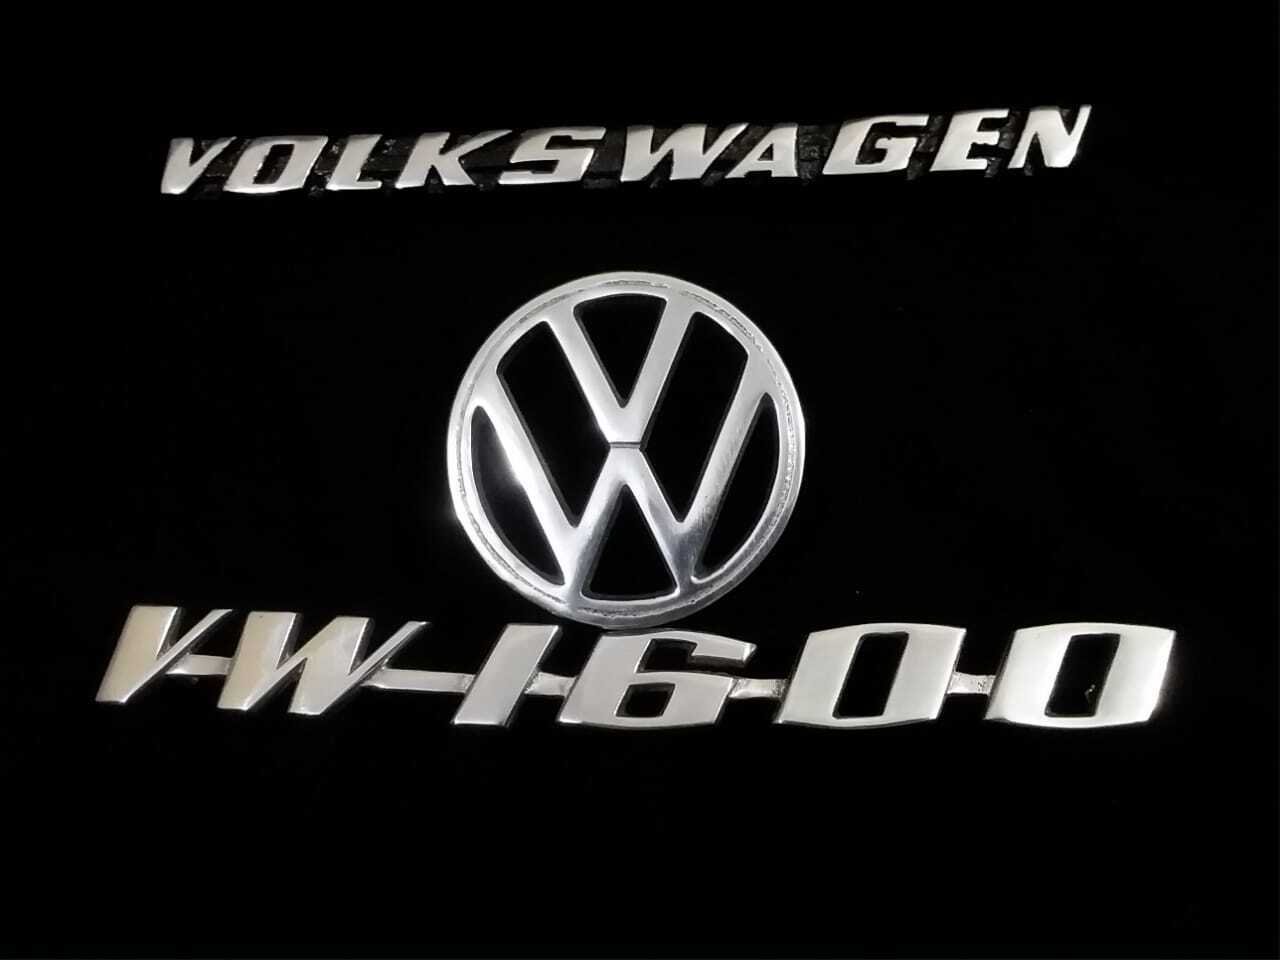 VOLKSWAGEN VW 1600 Digi Emblems With VOLKSWAGEN VW Bonut Emblem 3 Piece Set